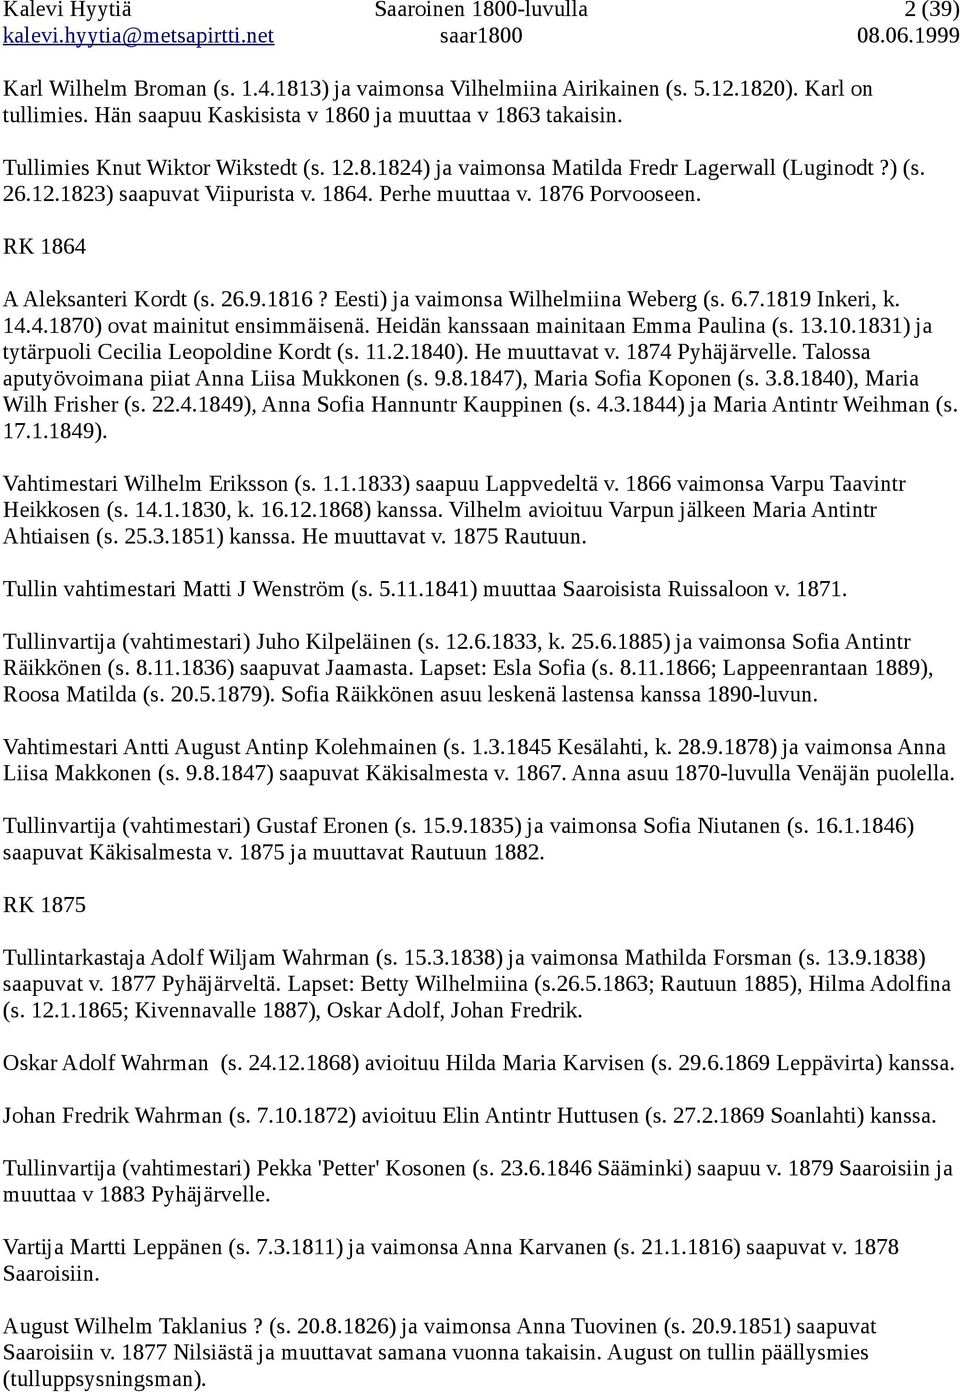 Perhe muuttaa v. 1876 Porvooseen. RK 1864 A Aleksanteri Kordt (s. 26.9.1816? Eesti) ja vaimonsa Wilhelmiina Weberg (s. 6.7.1819 Inkeri, k. 14.4.1870) ovat mainitut ensimmäisenä.